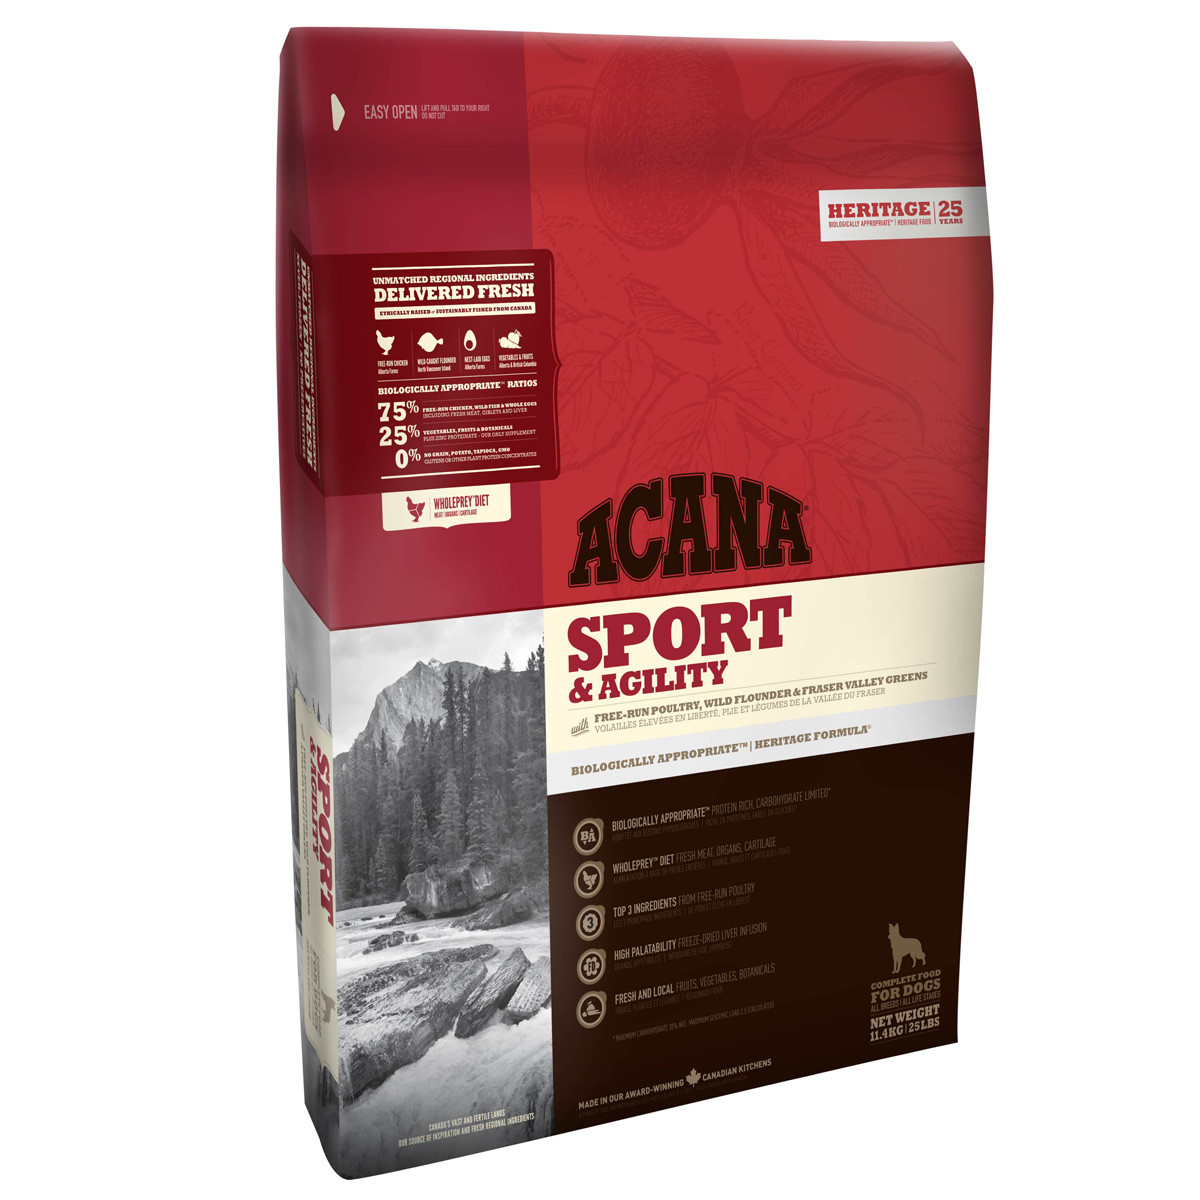 Acana Sport and Agility Dog Food - 11.4 kg